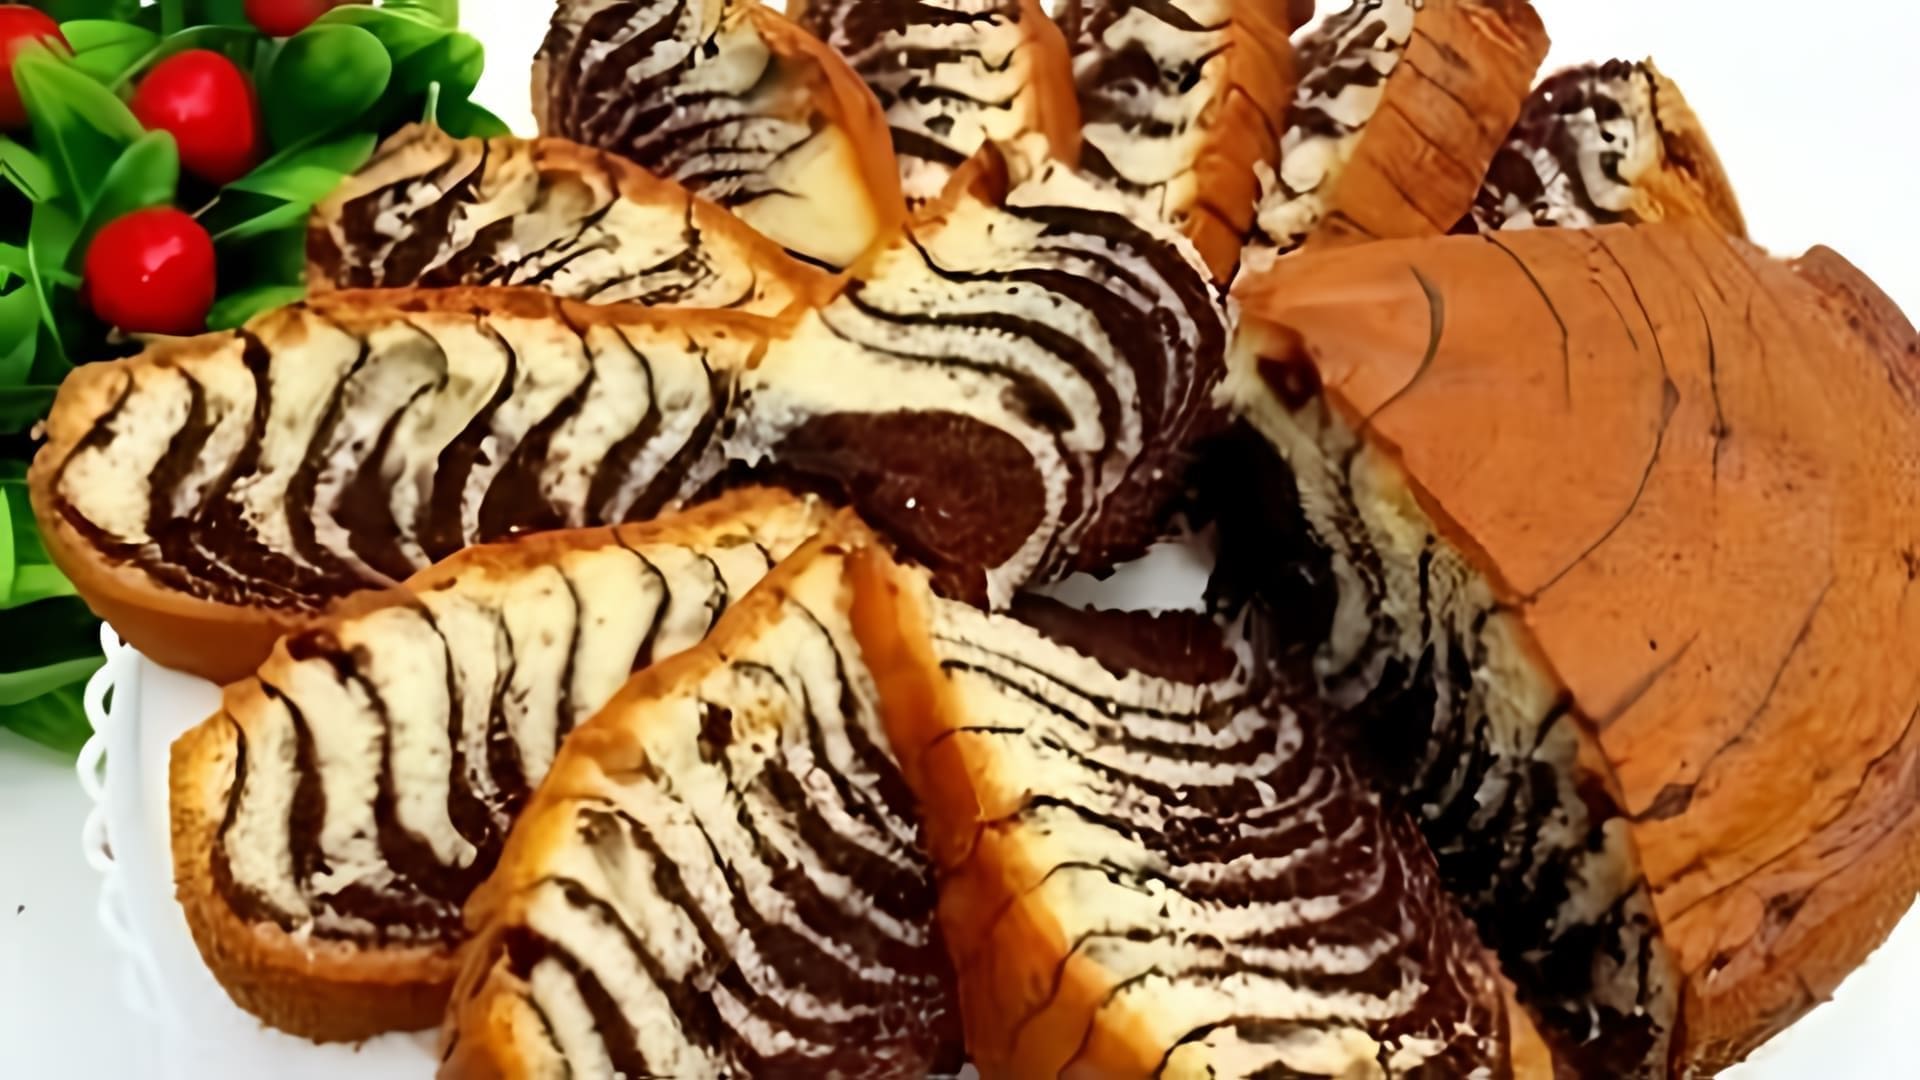 "И торта не надо! Пирог Зебра - самый удачный рецепт" - это видео-ролик, который рассказывает о том, как приготовить вкусный и оригинальный пирог Зебра